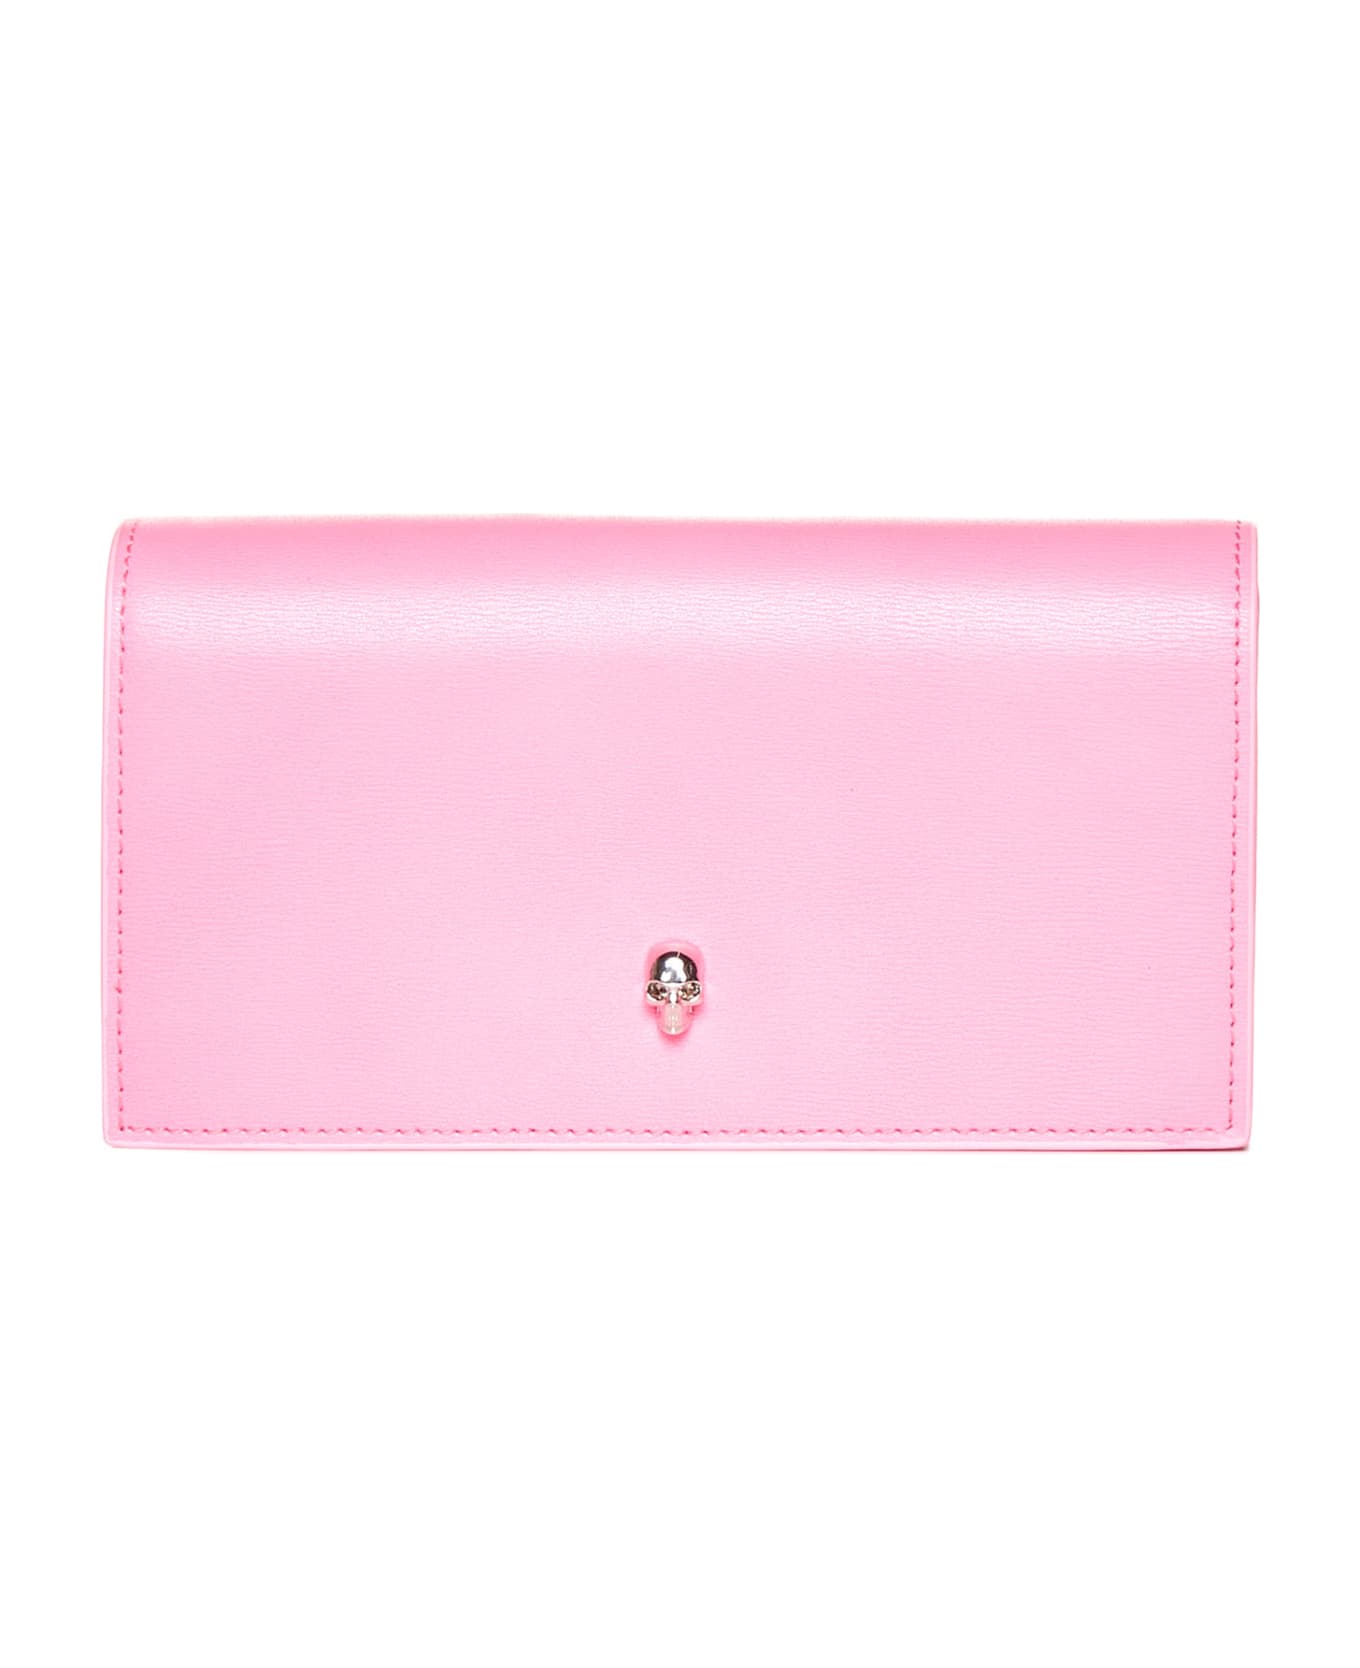 Alexander McQueen Leather Wallet - Fluo pink 財布